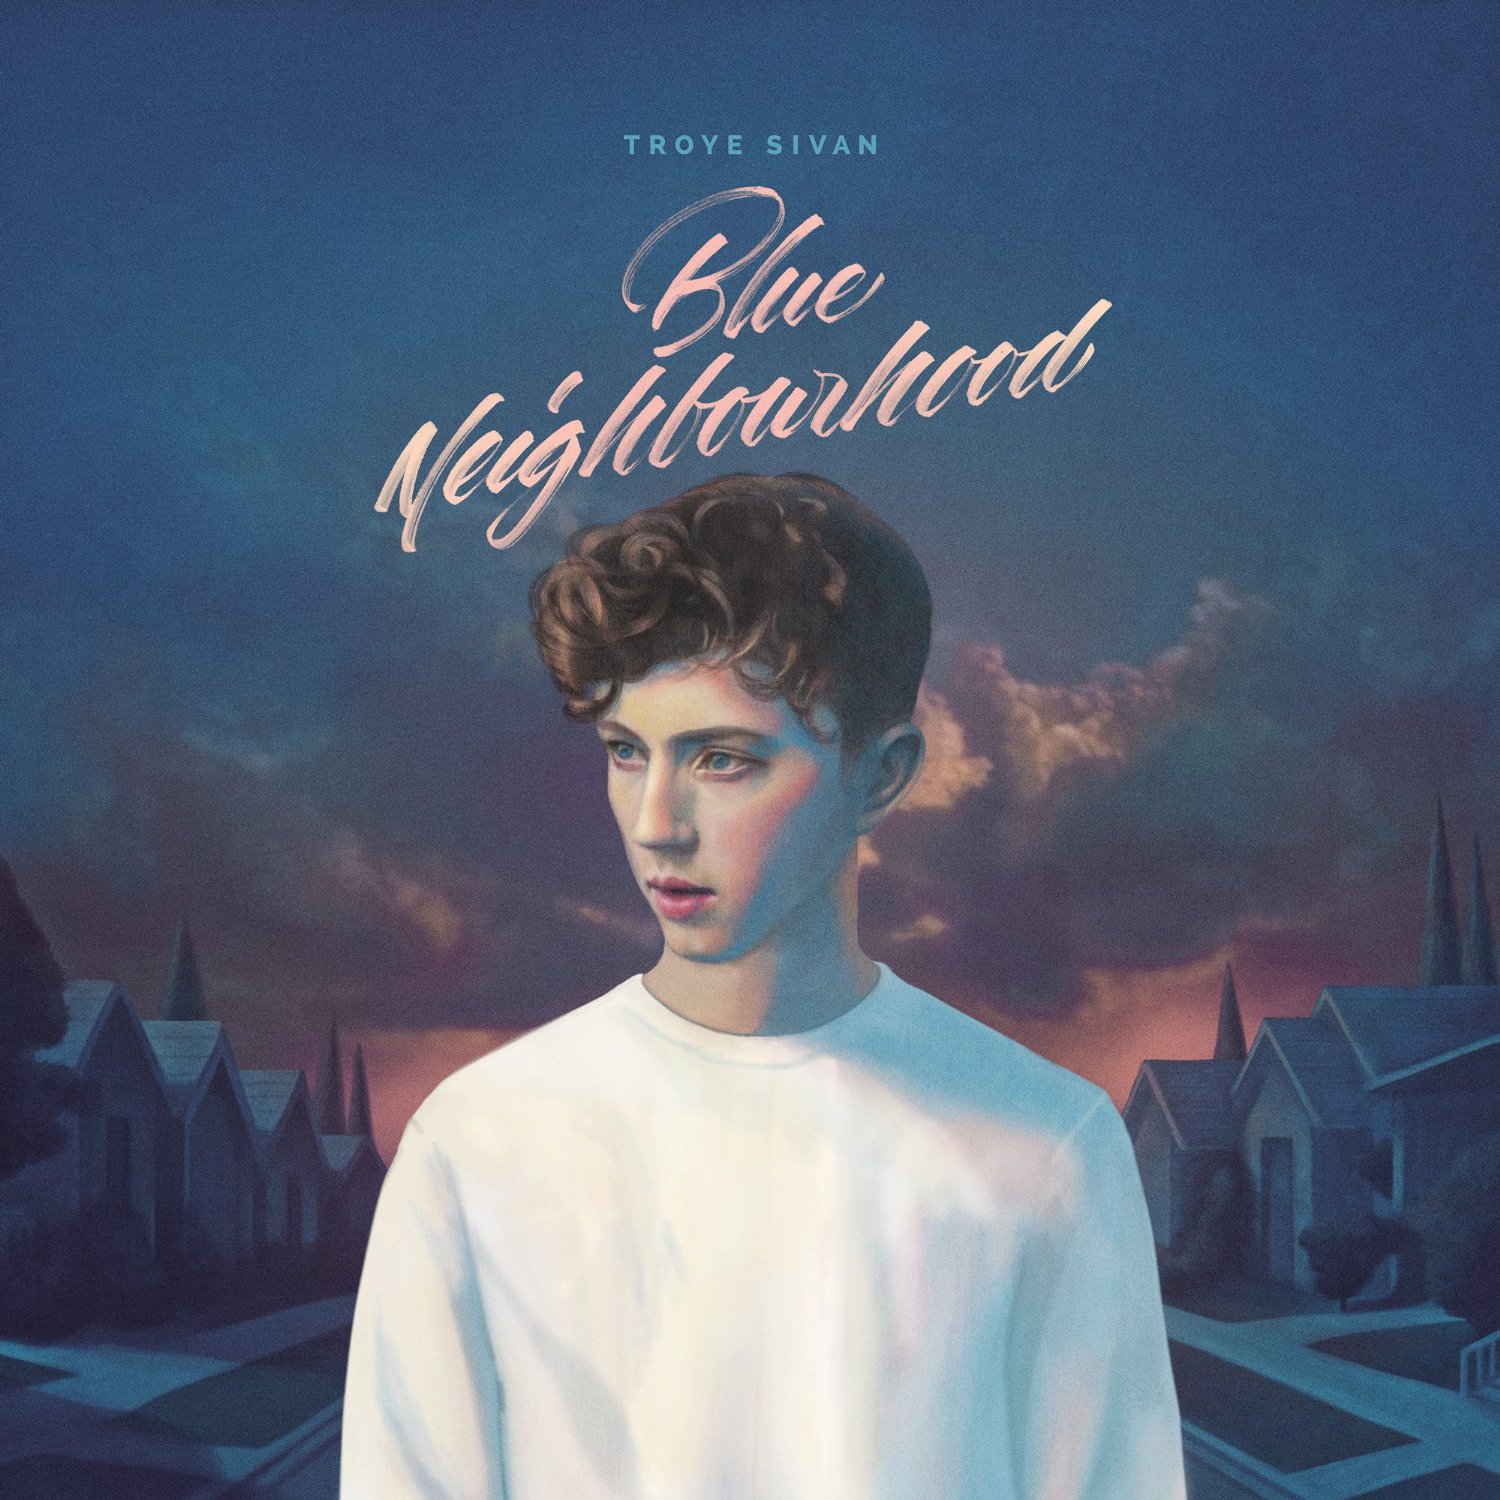 Troye Sivan Blue Neighbourhood Album Review